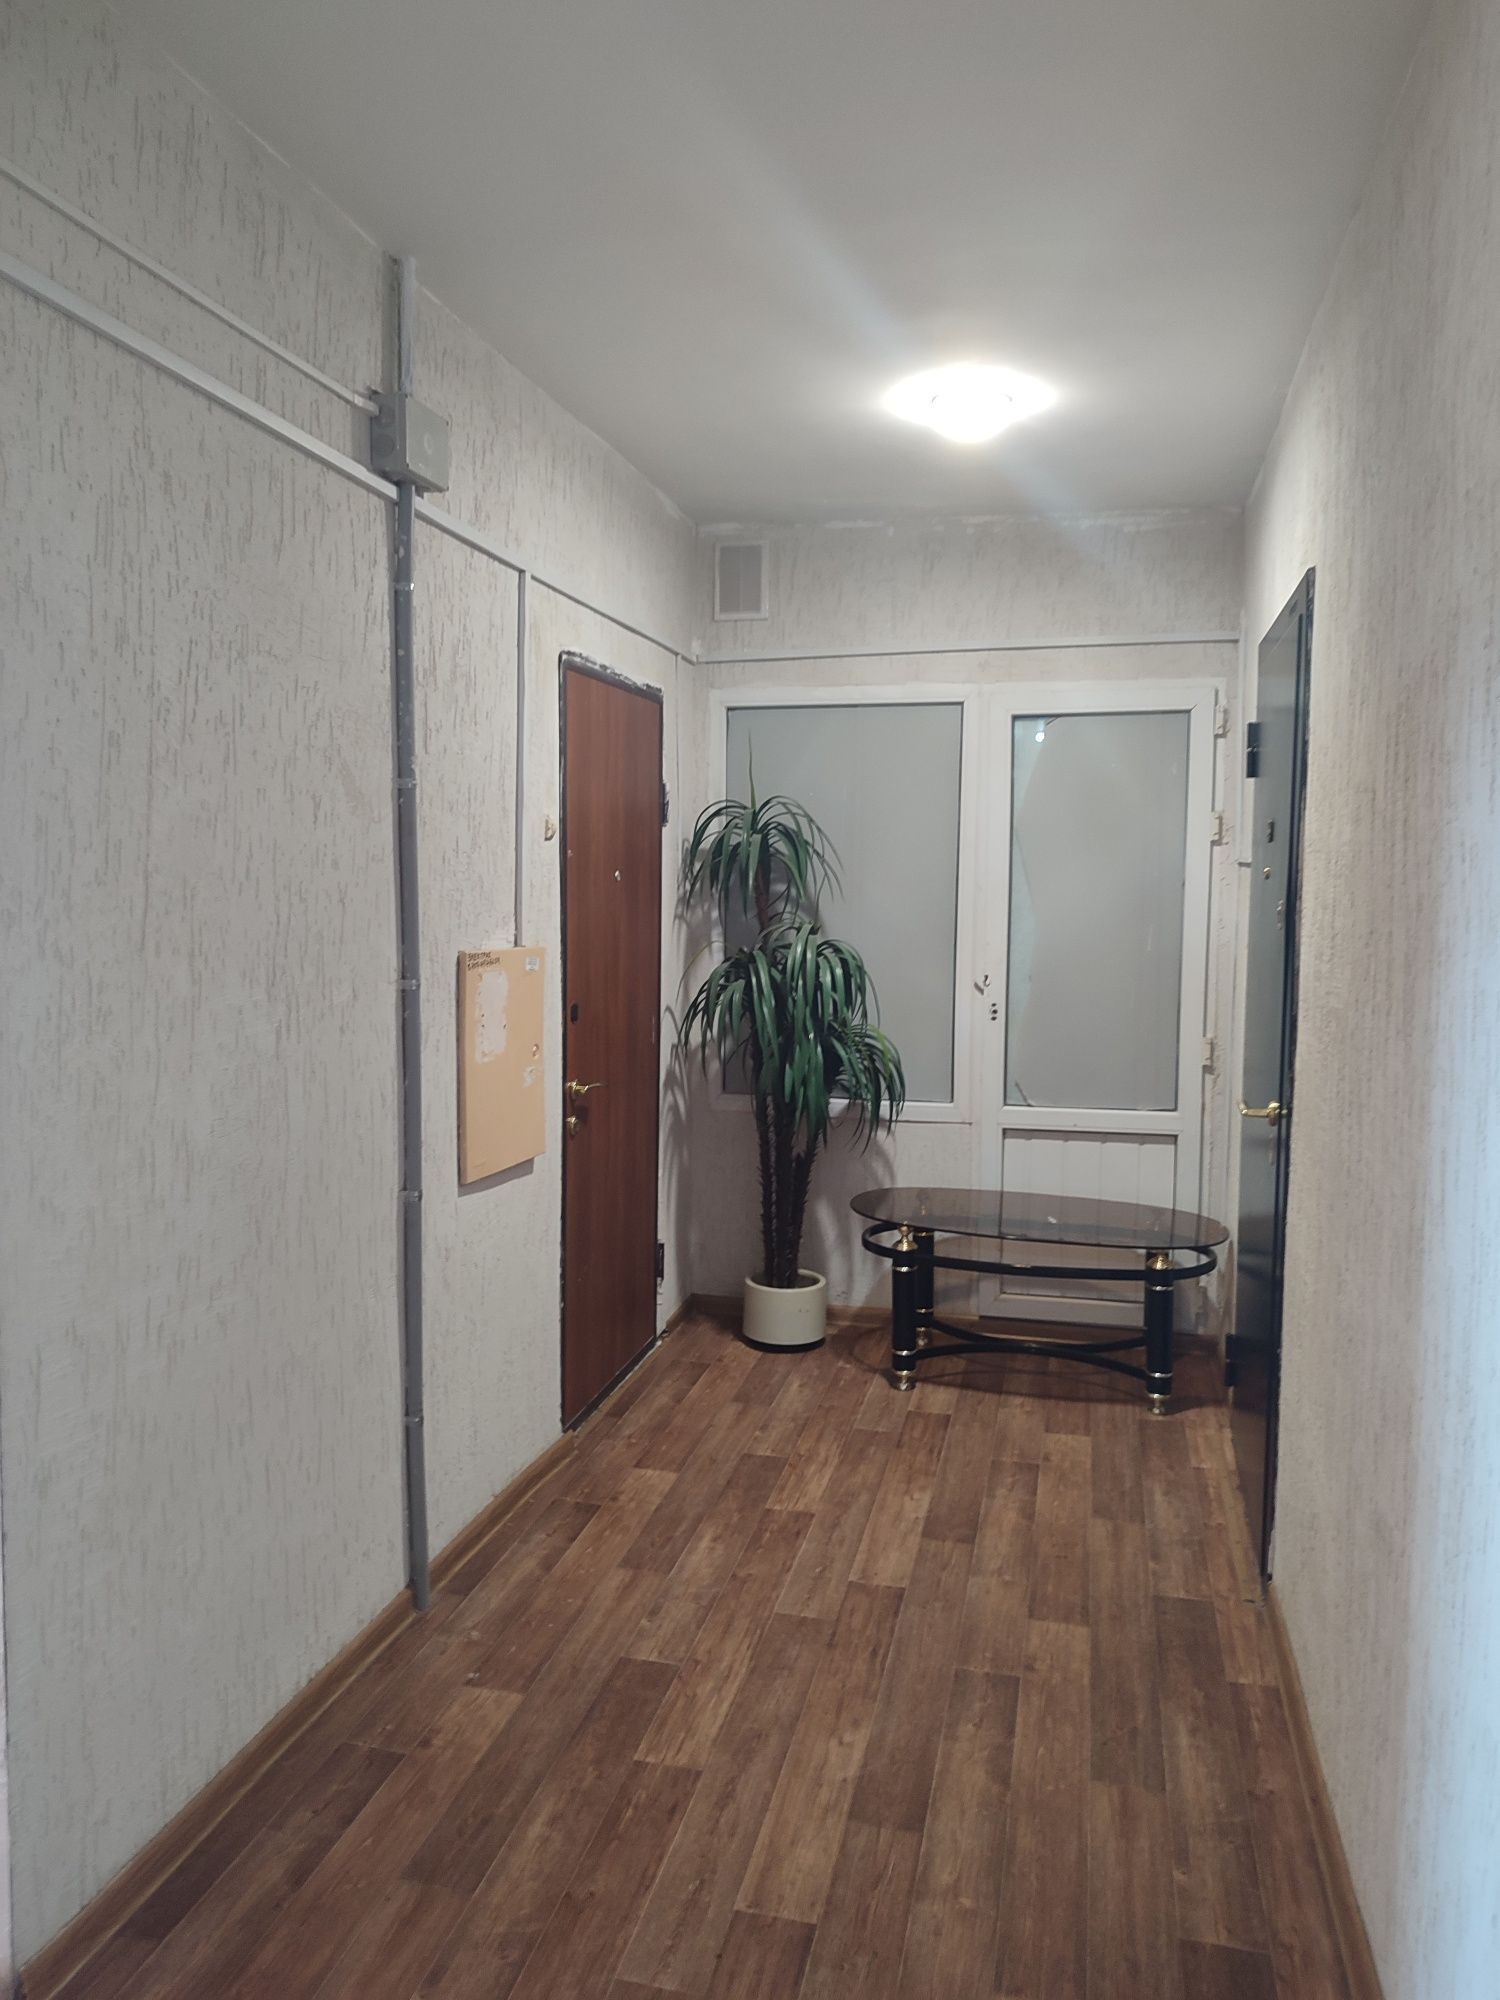 Продаю пятикомнатную квартиру в Астане (М. Жумабаева, дом 12, Встреча)